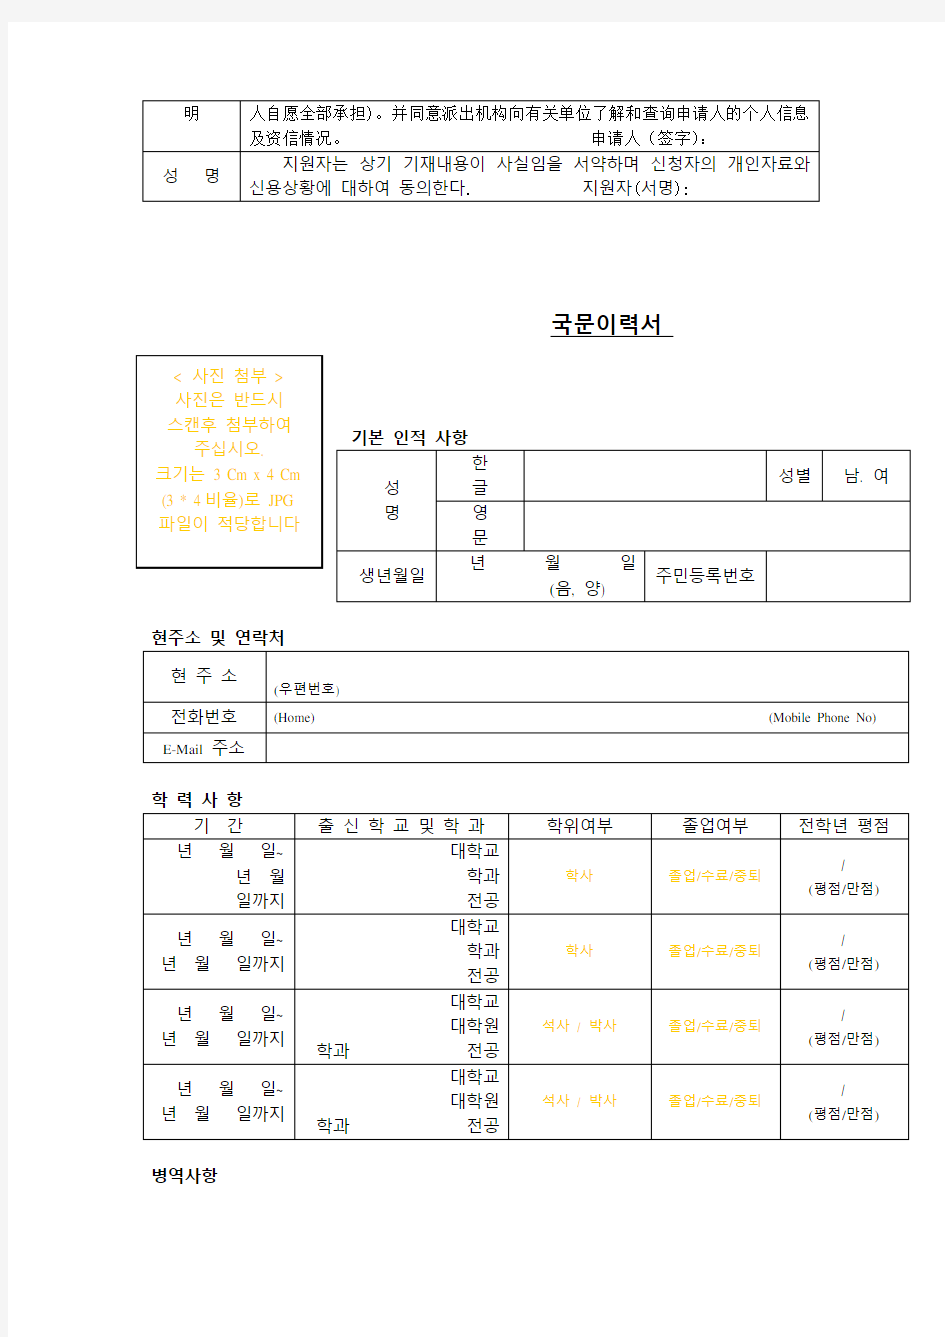 韩语简历模板表格下载(韩中对照)